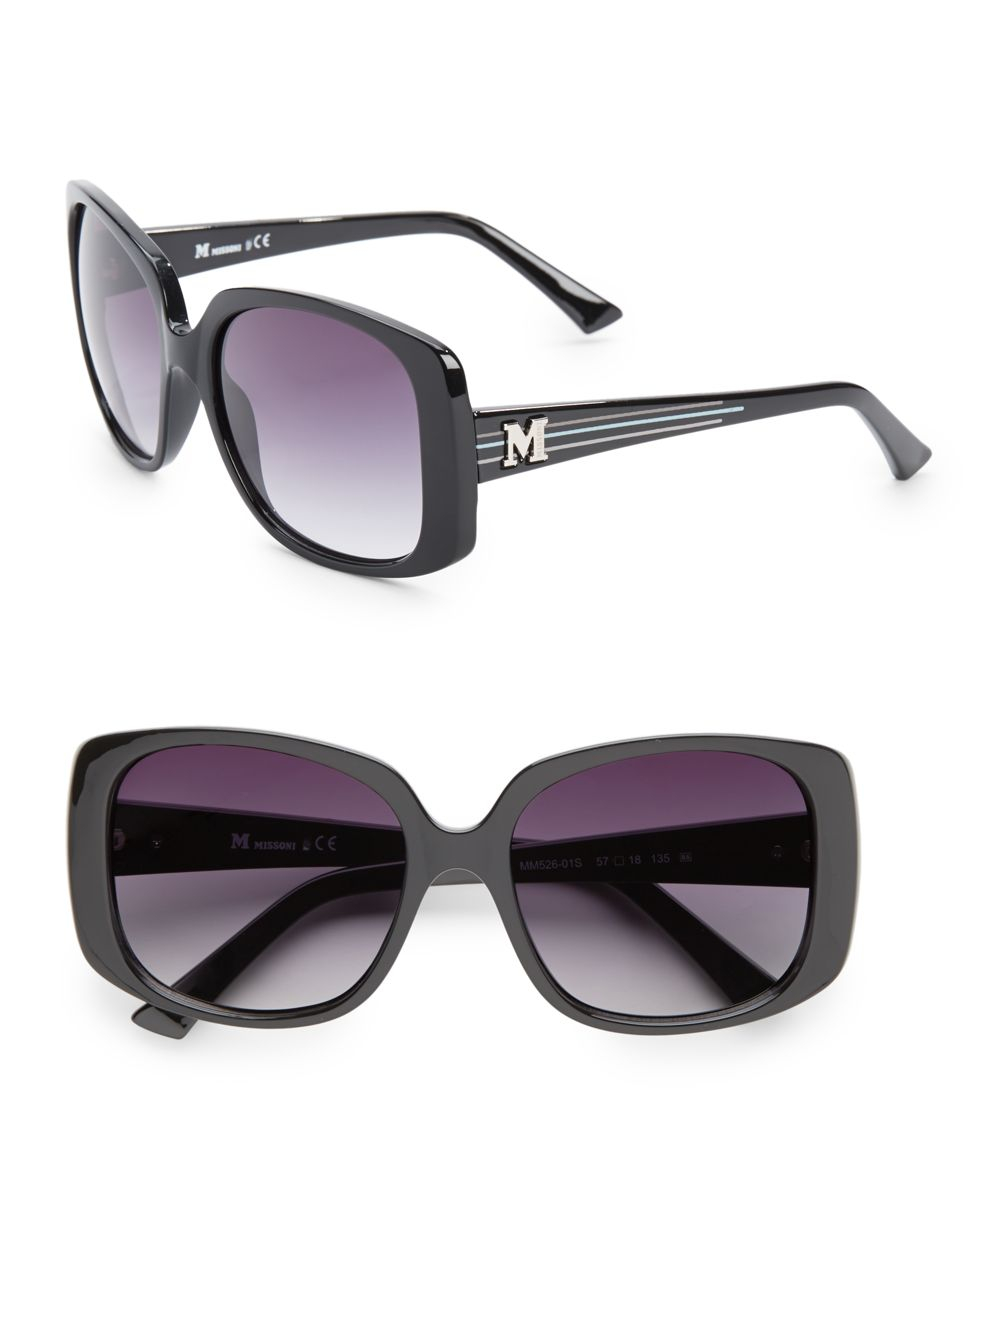 Lyst - Missoni 57mm Square Plastic Sunglasses in Black